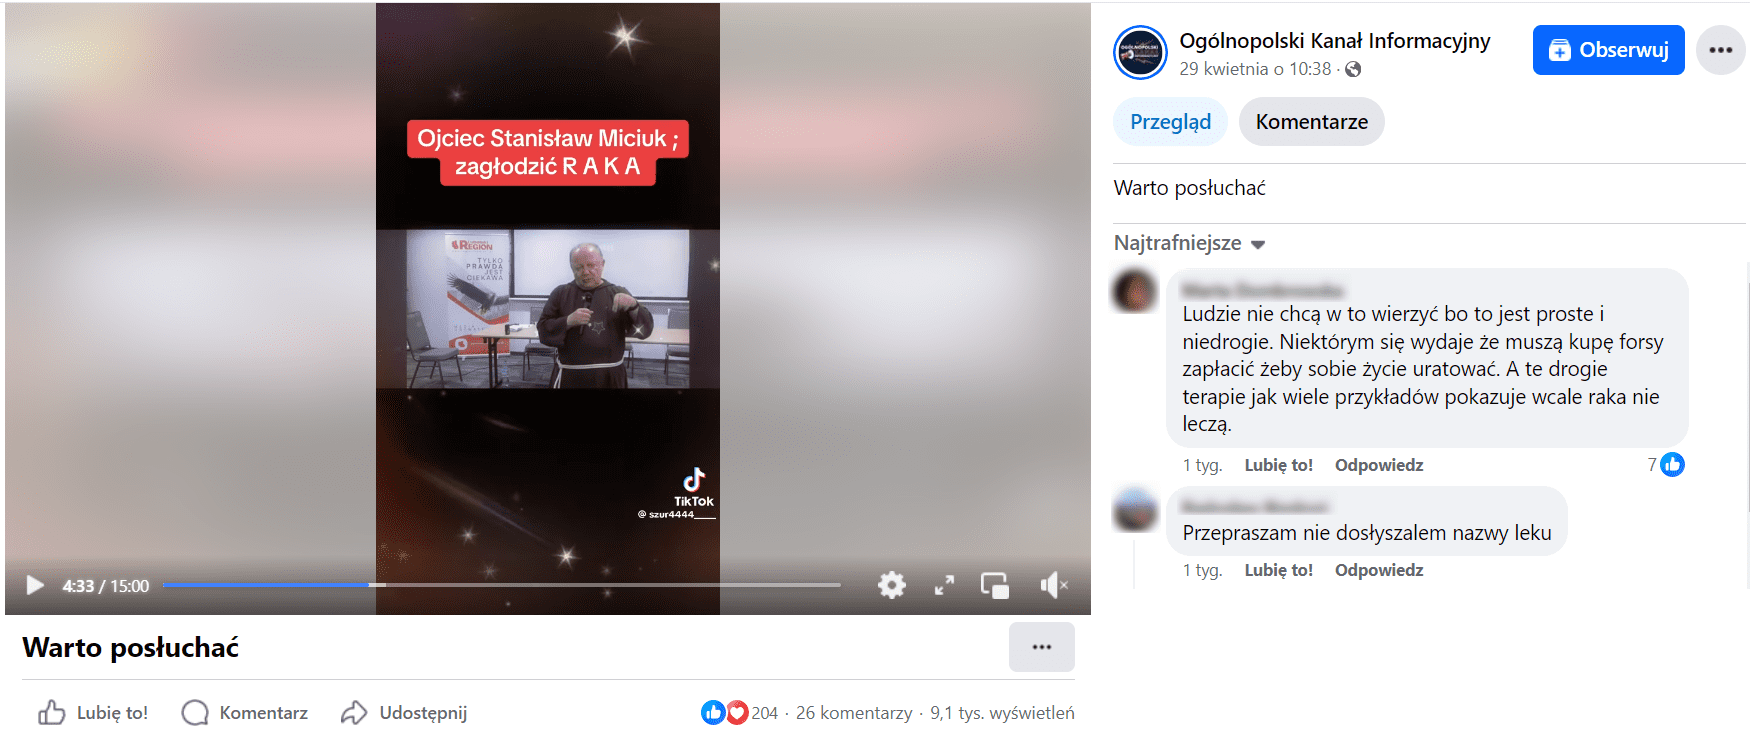 Zrzut ekranu z nagrania na Facebooku. Widoczny napis: „Ojciec Stanisław Miciuk; zagłodzić R A K A”. Liczba reakcji: 204, liczba komentarzy: 26, liczba wyświetleń: 9,1 tys.